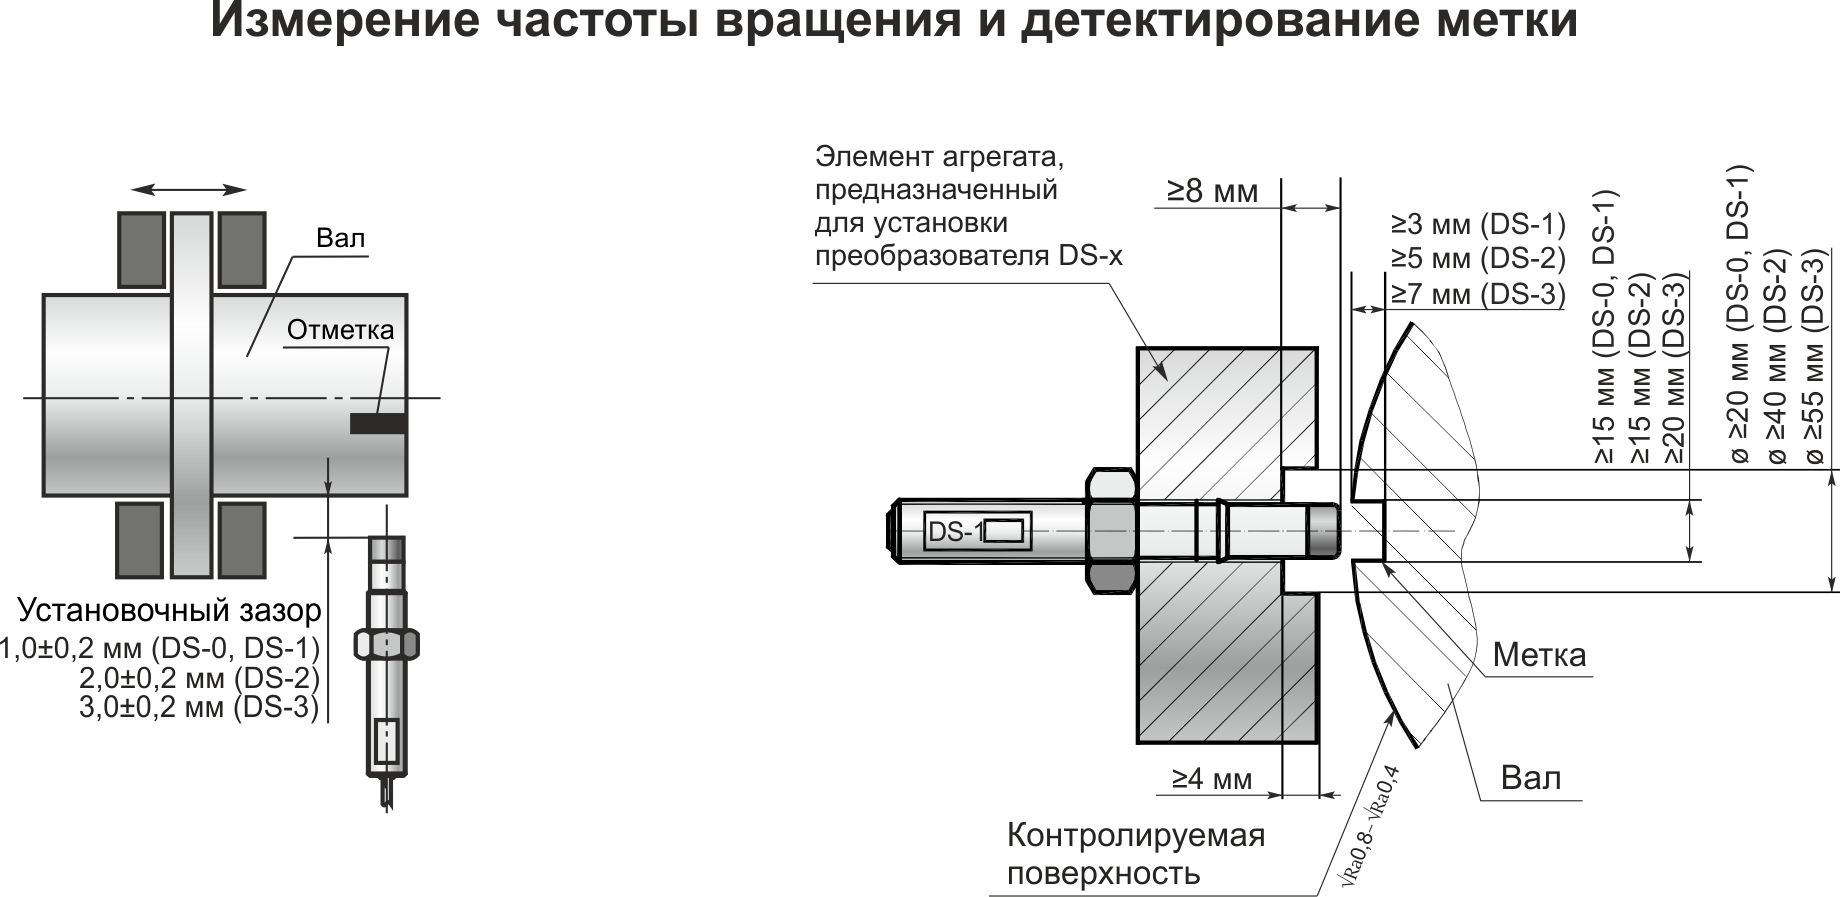 Типовая схема установки виброизмерительного канала ИКВ-1-4-1.1